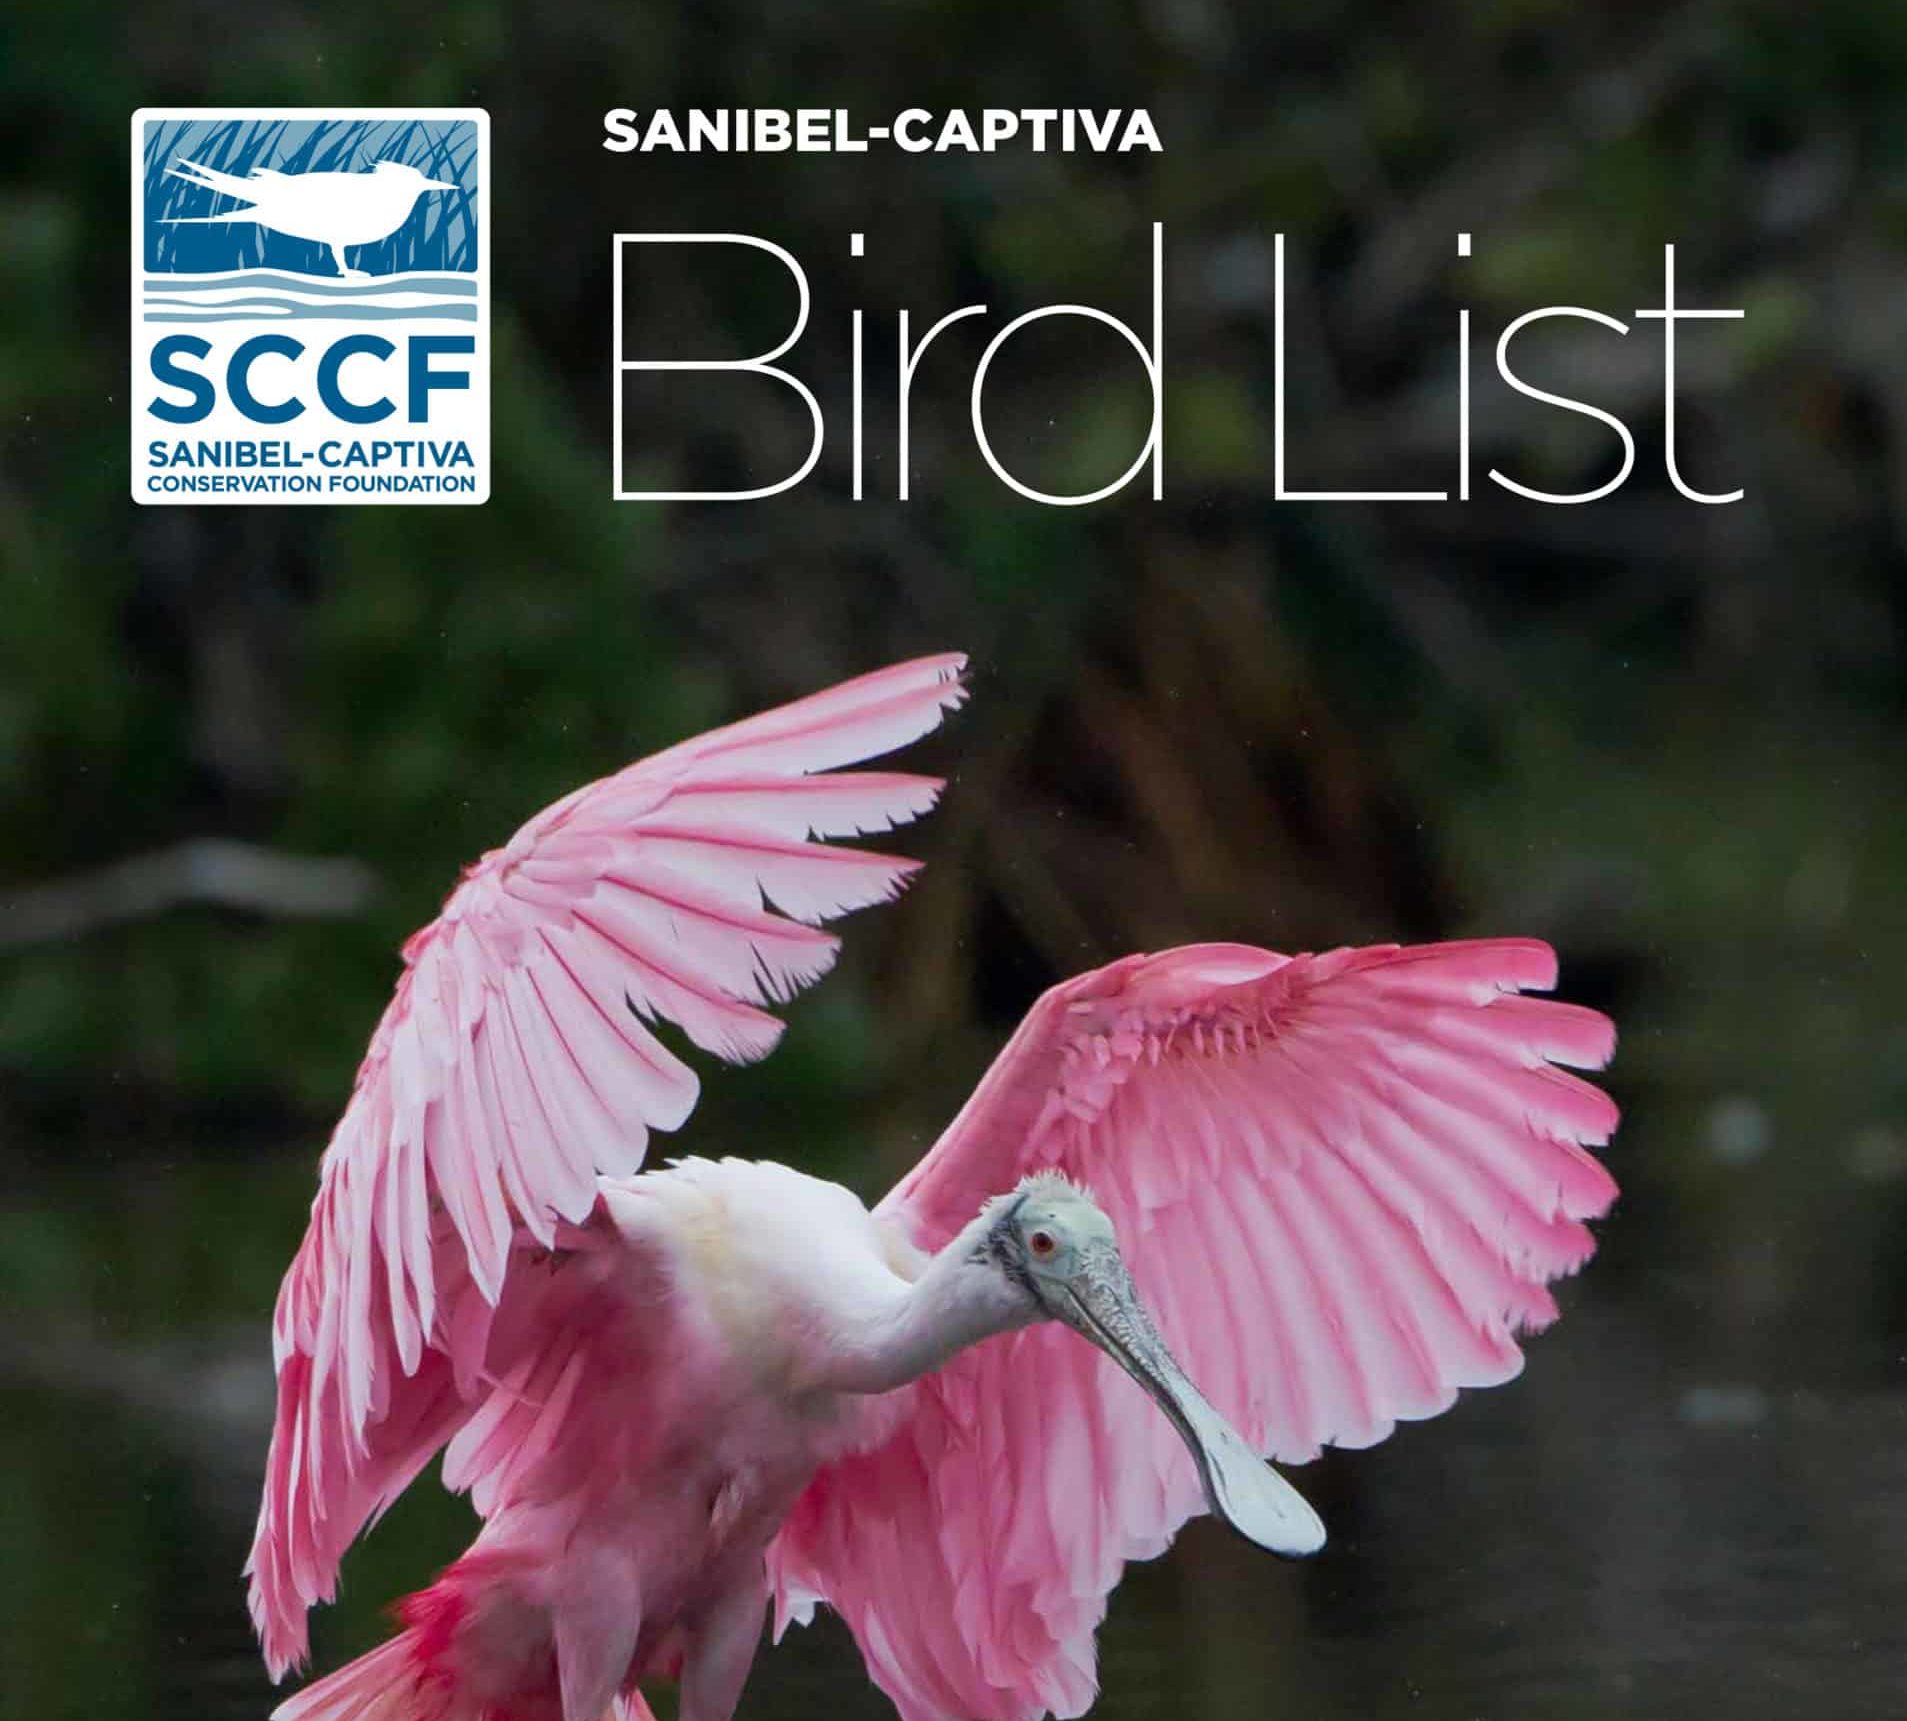 sccf bird list image